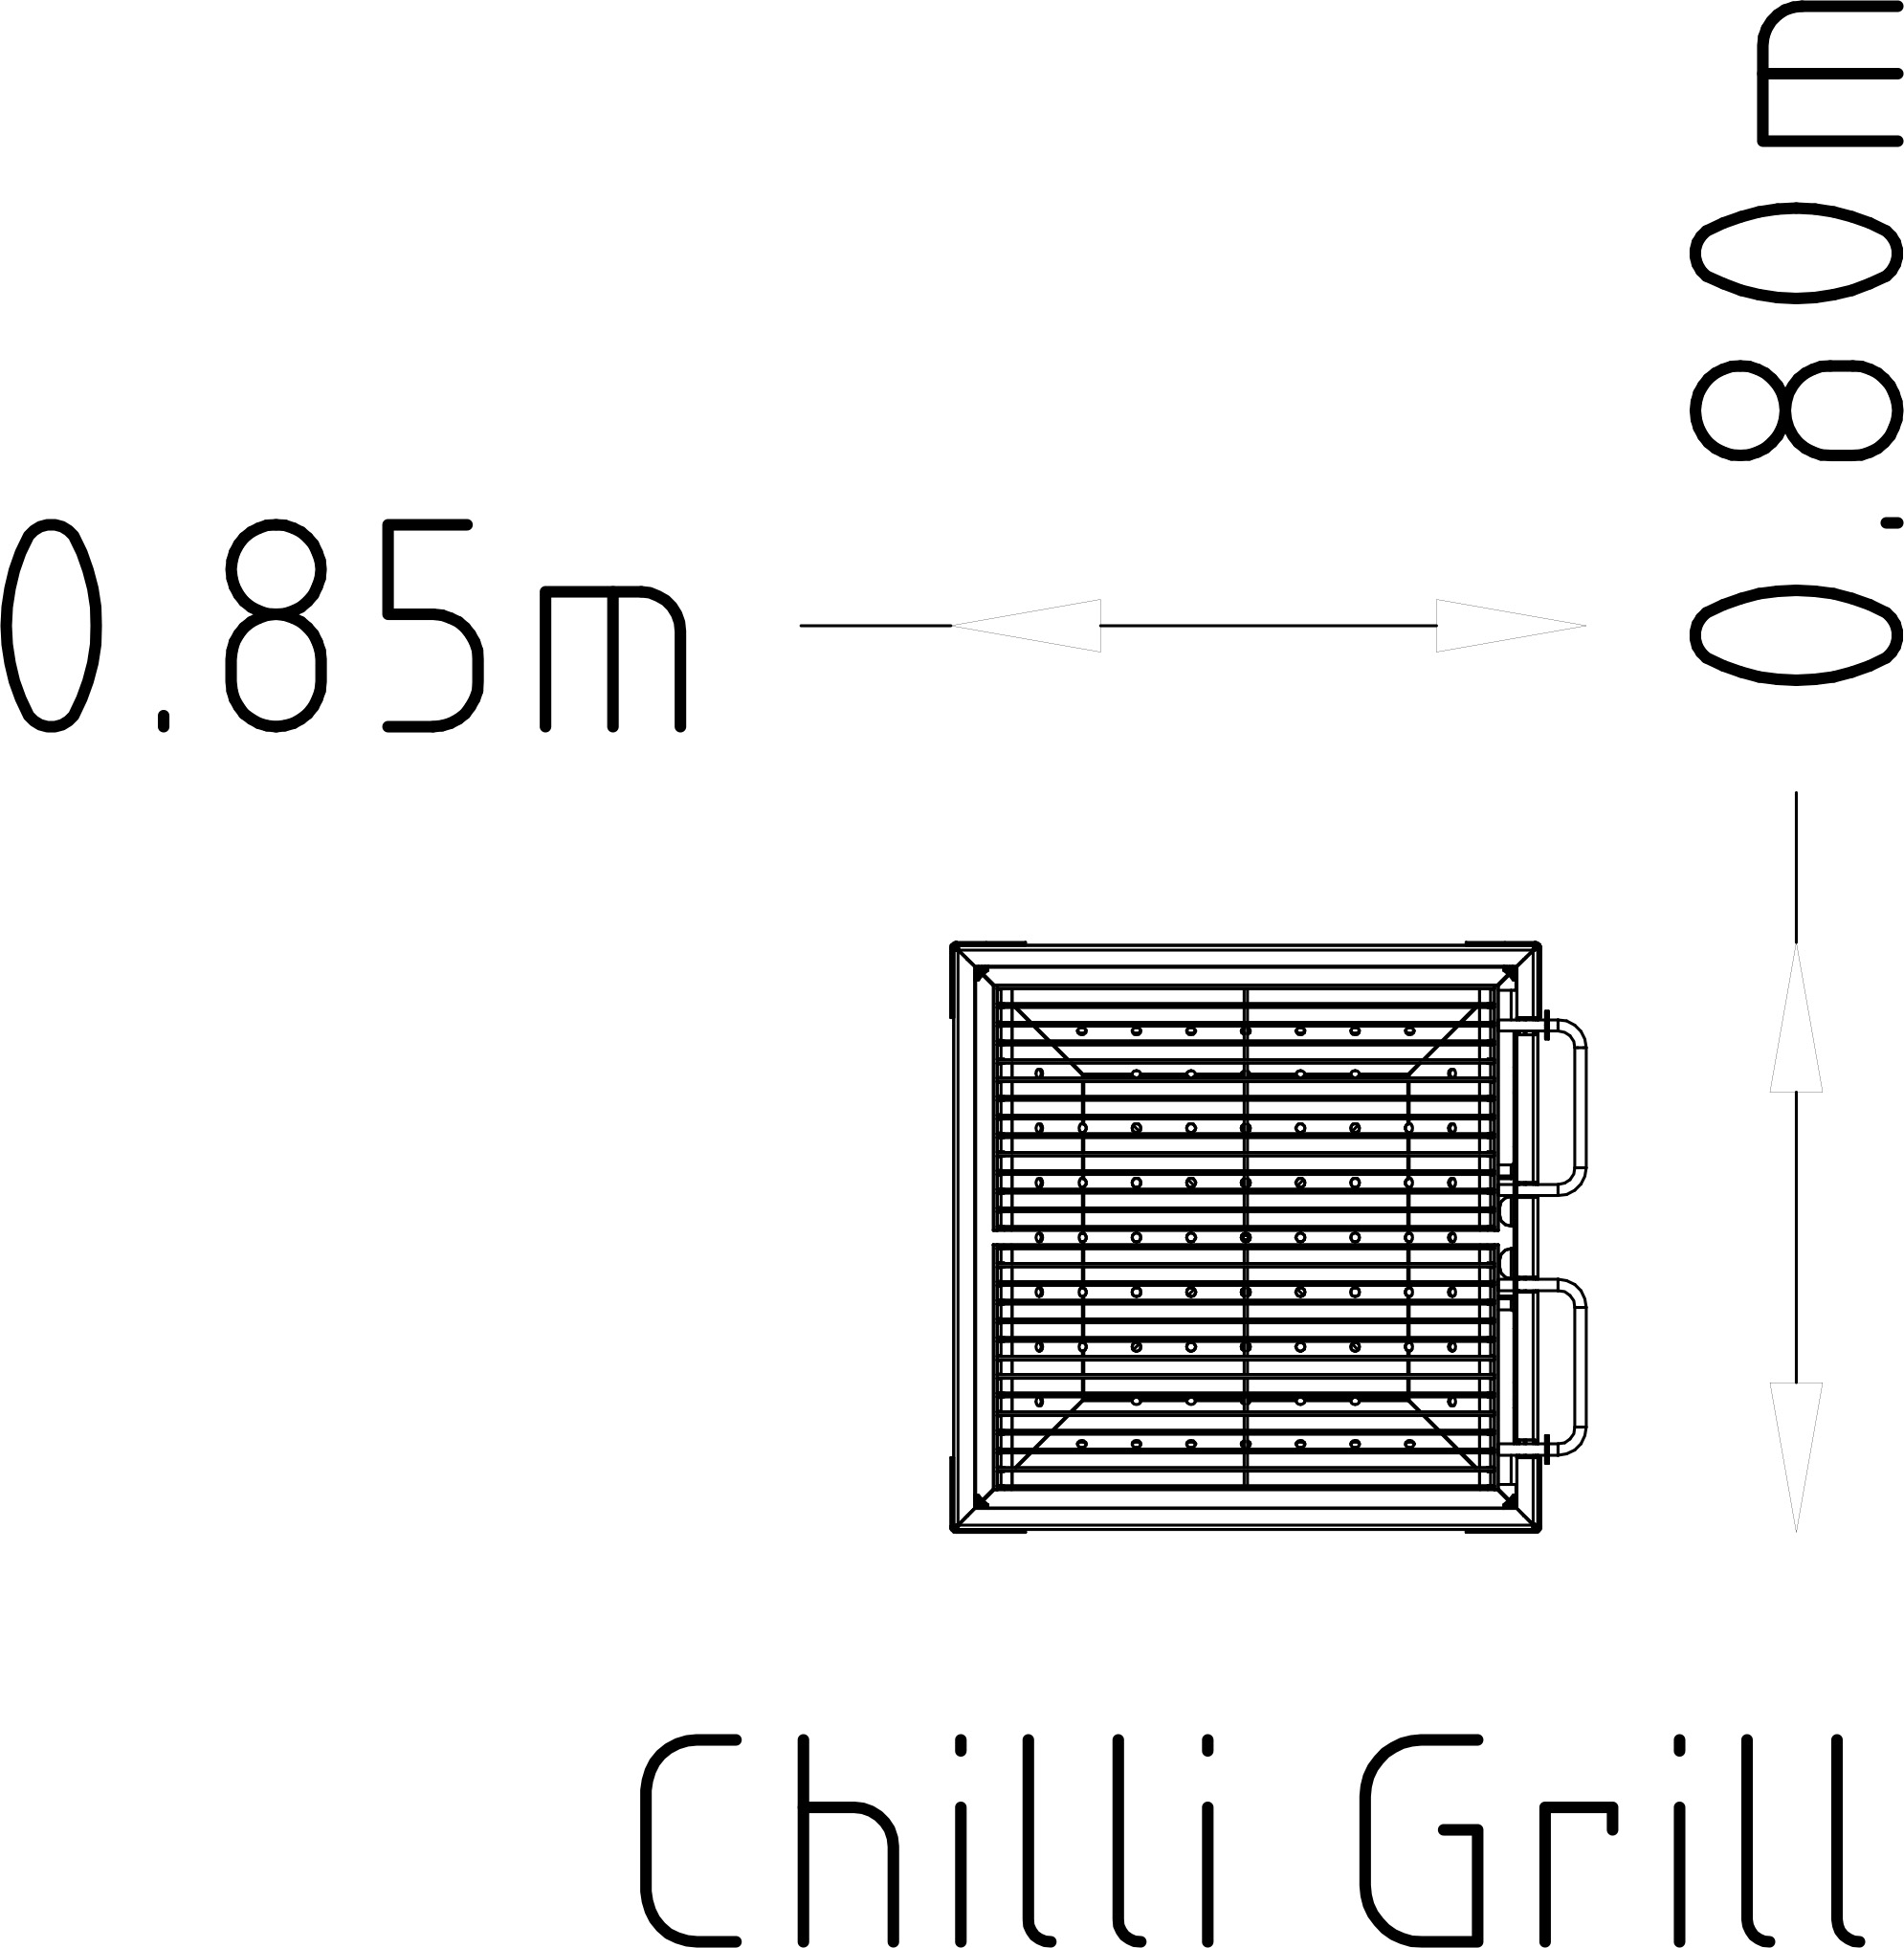 Barbecue Grill Chili